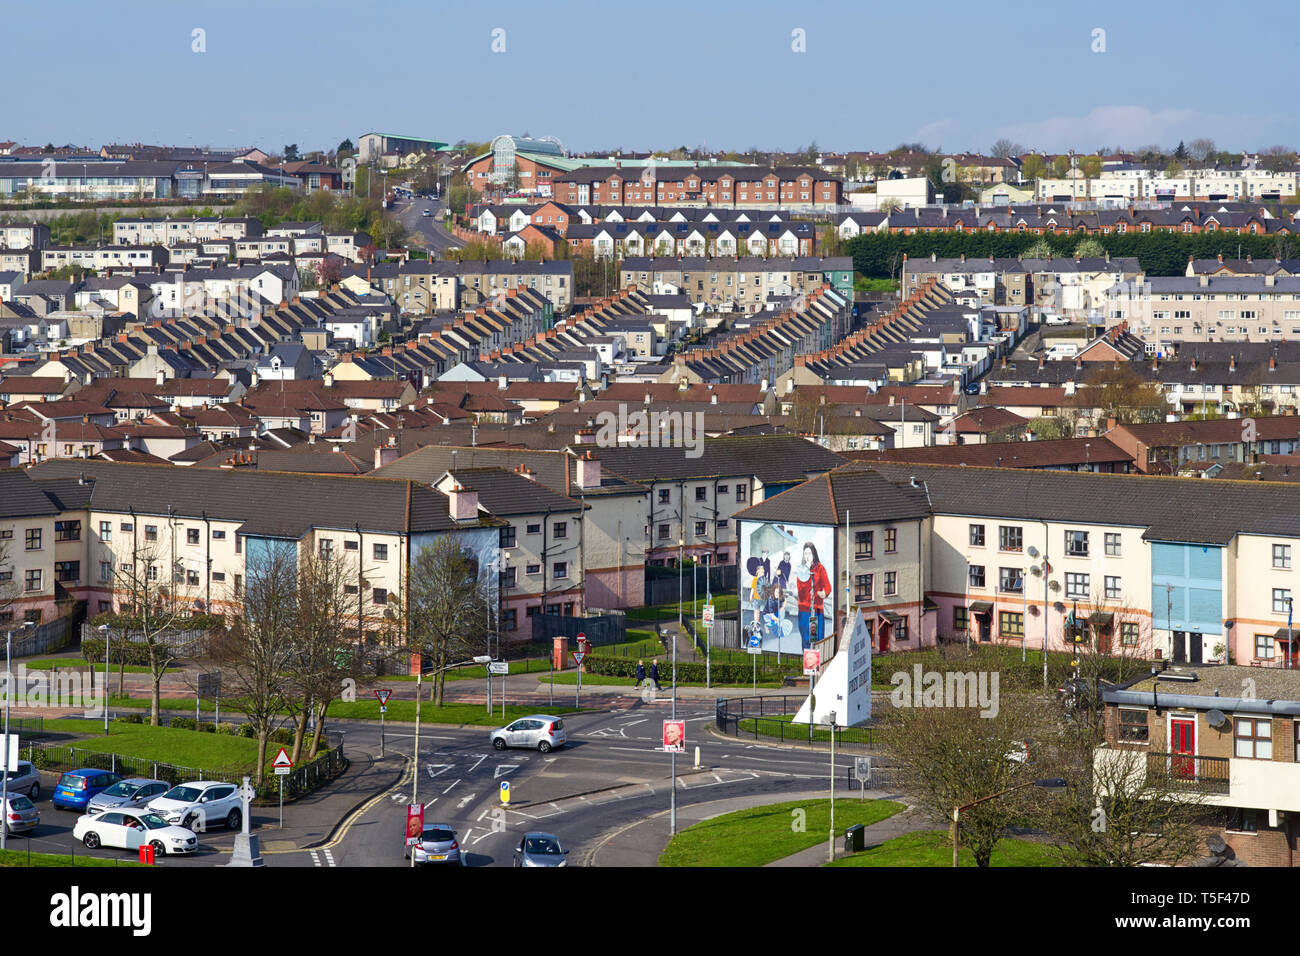 Mit Blick auf den Bogside Bereich von Londonderry in den dicht besiedelten hauptsächlich katholischen Bereich der Free Derry. Stockfoto